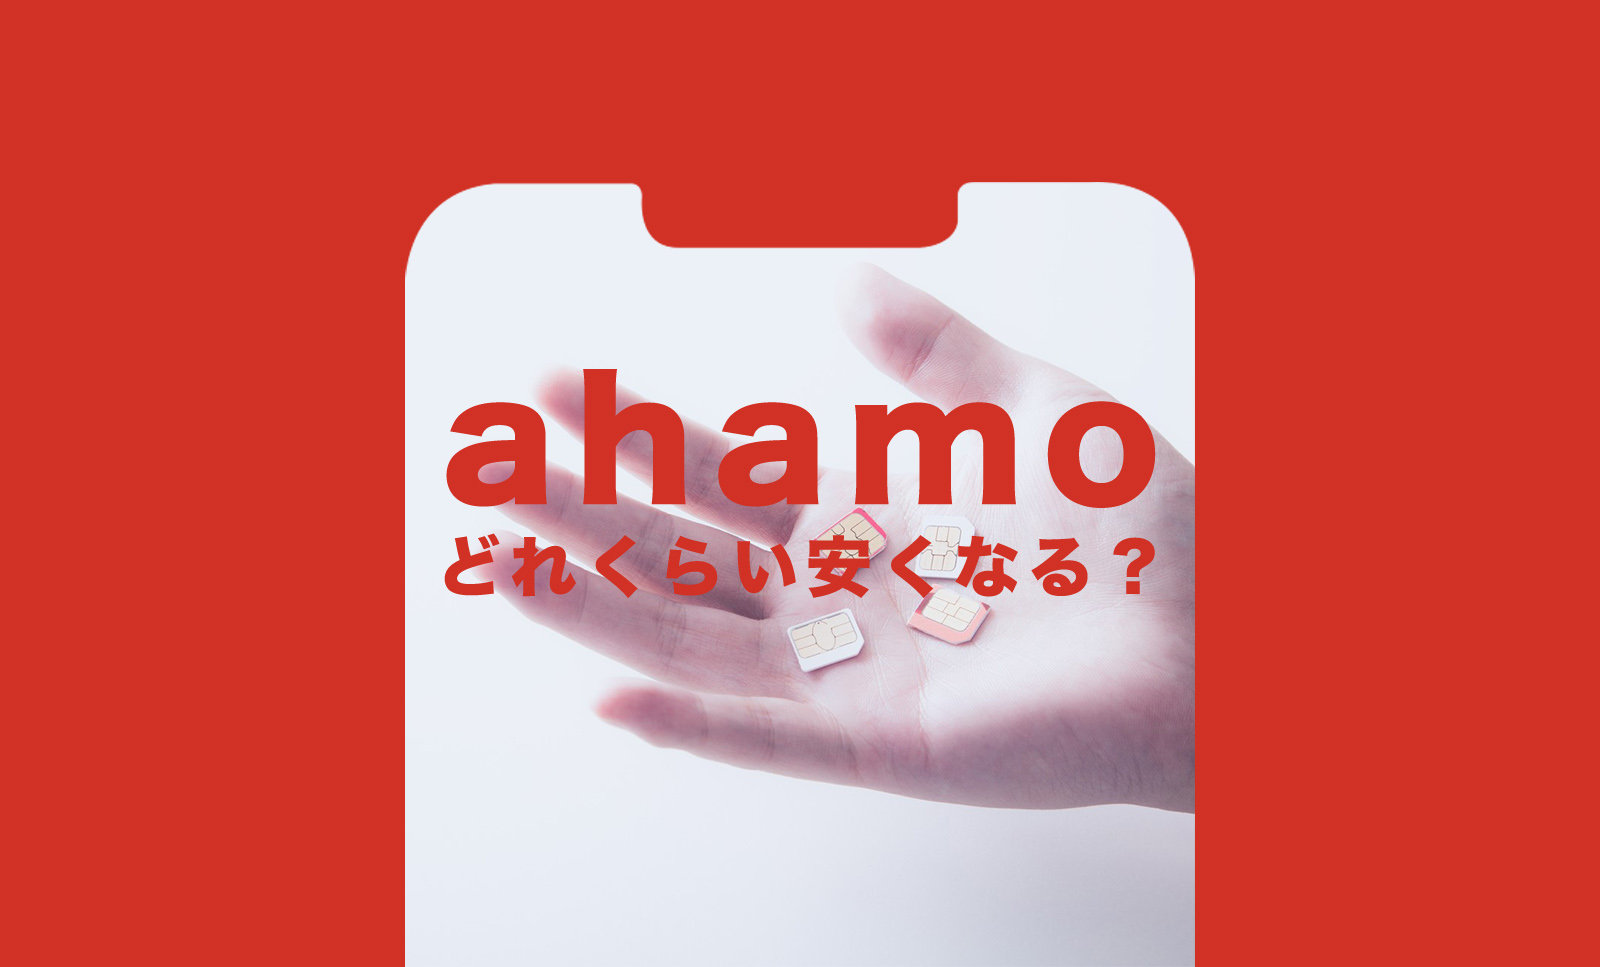 ahamo(アハモ)はどれくらい安くなるか解説のサムネイル画像